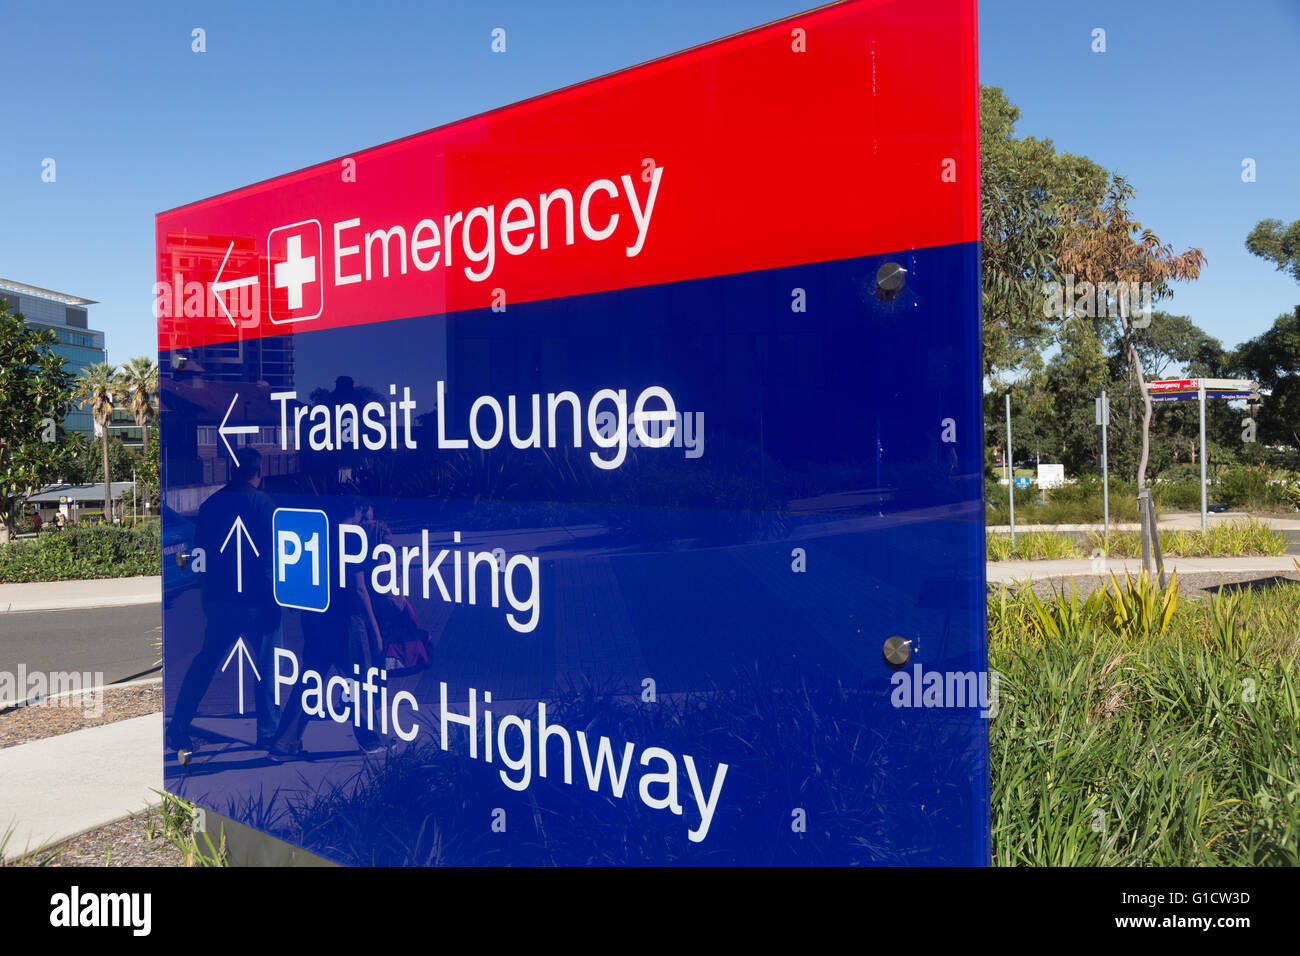 Sydney Royal North Shore hospital di St Leonards, Nuovo Galles del Sud, Australia Foto Stock